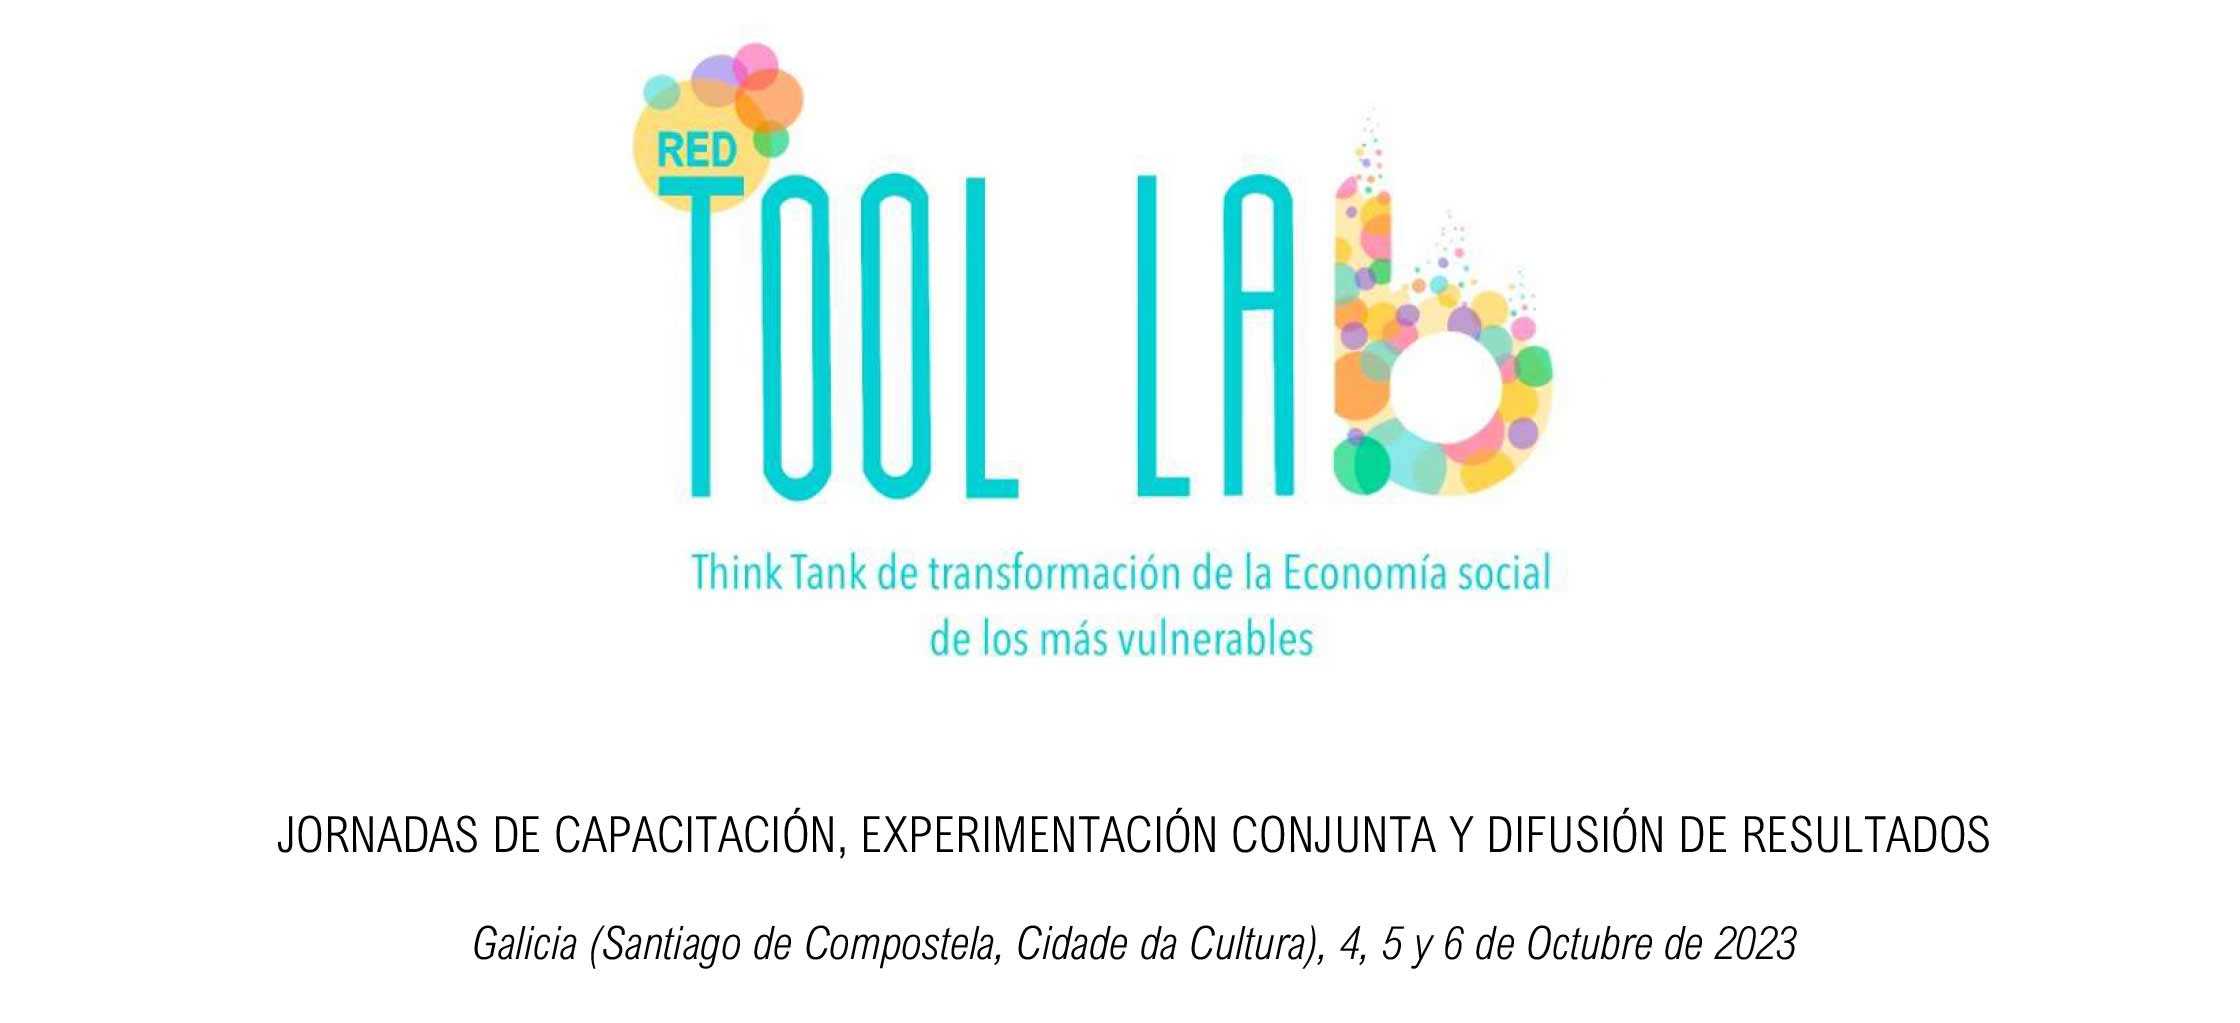 La Red Tool Lab celebra en Galicia tres jornadas de capacitación, experimentación y difusión conjunta